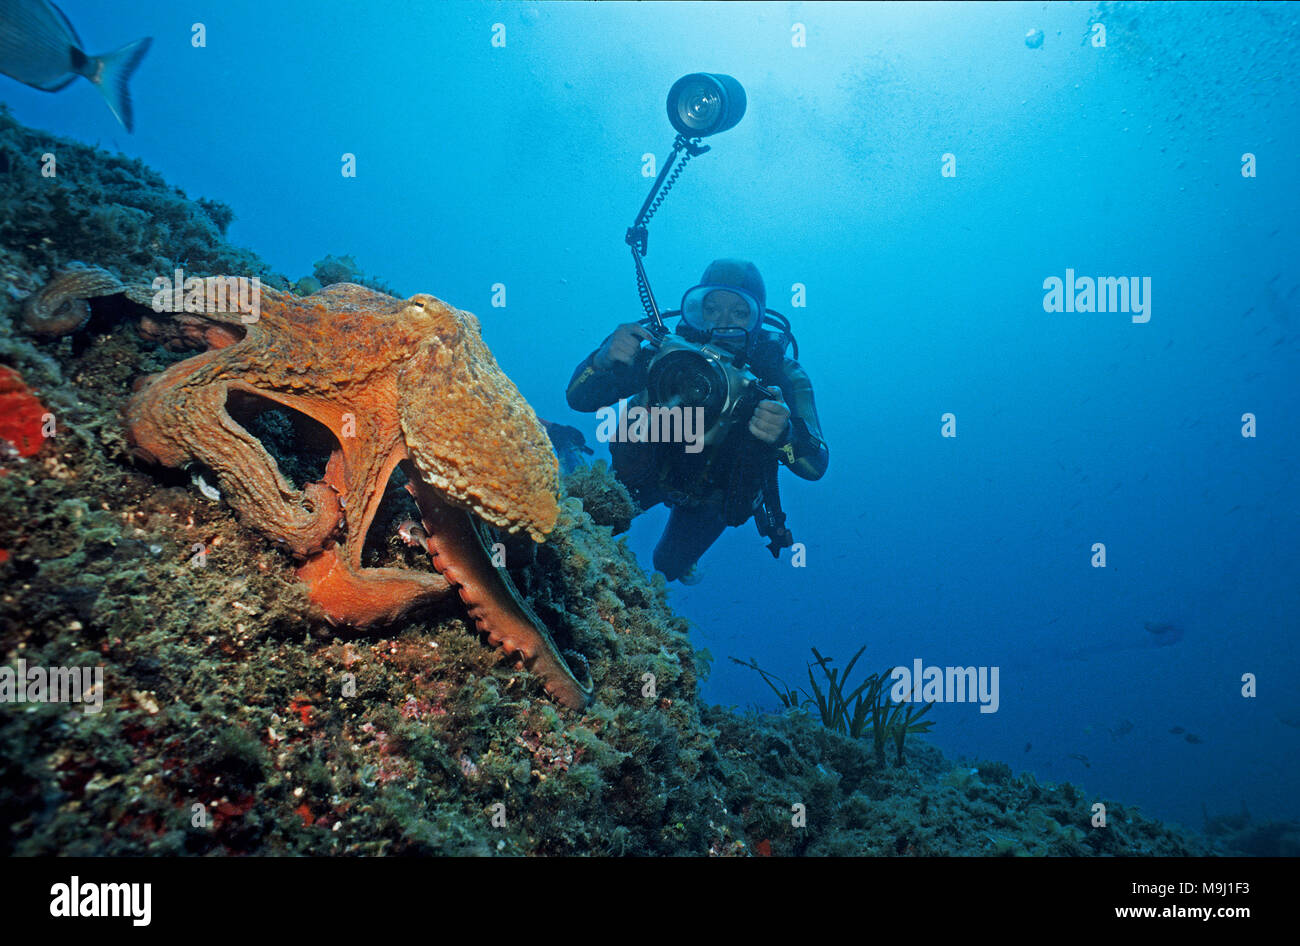 Photographies de scuba diver un poulpe commun (Octopus vulgaris) à un récif de la méditerranée, Benidorm, Costa Blanca, Espagne, Europe Banque D'Images